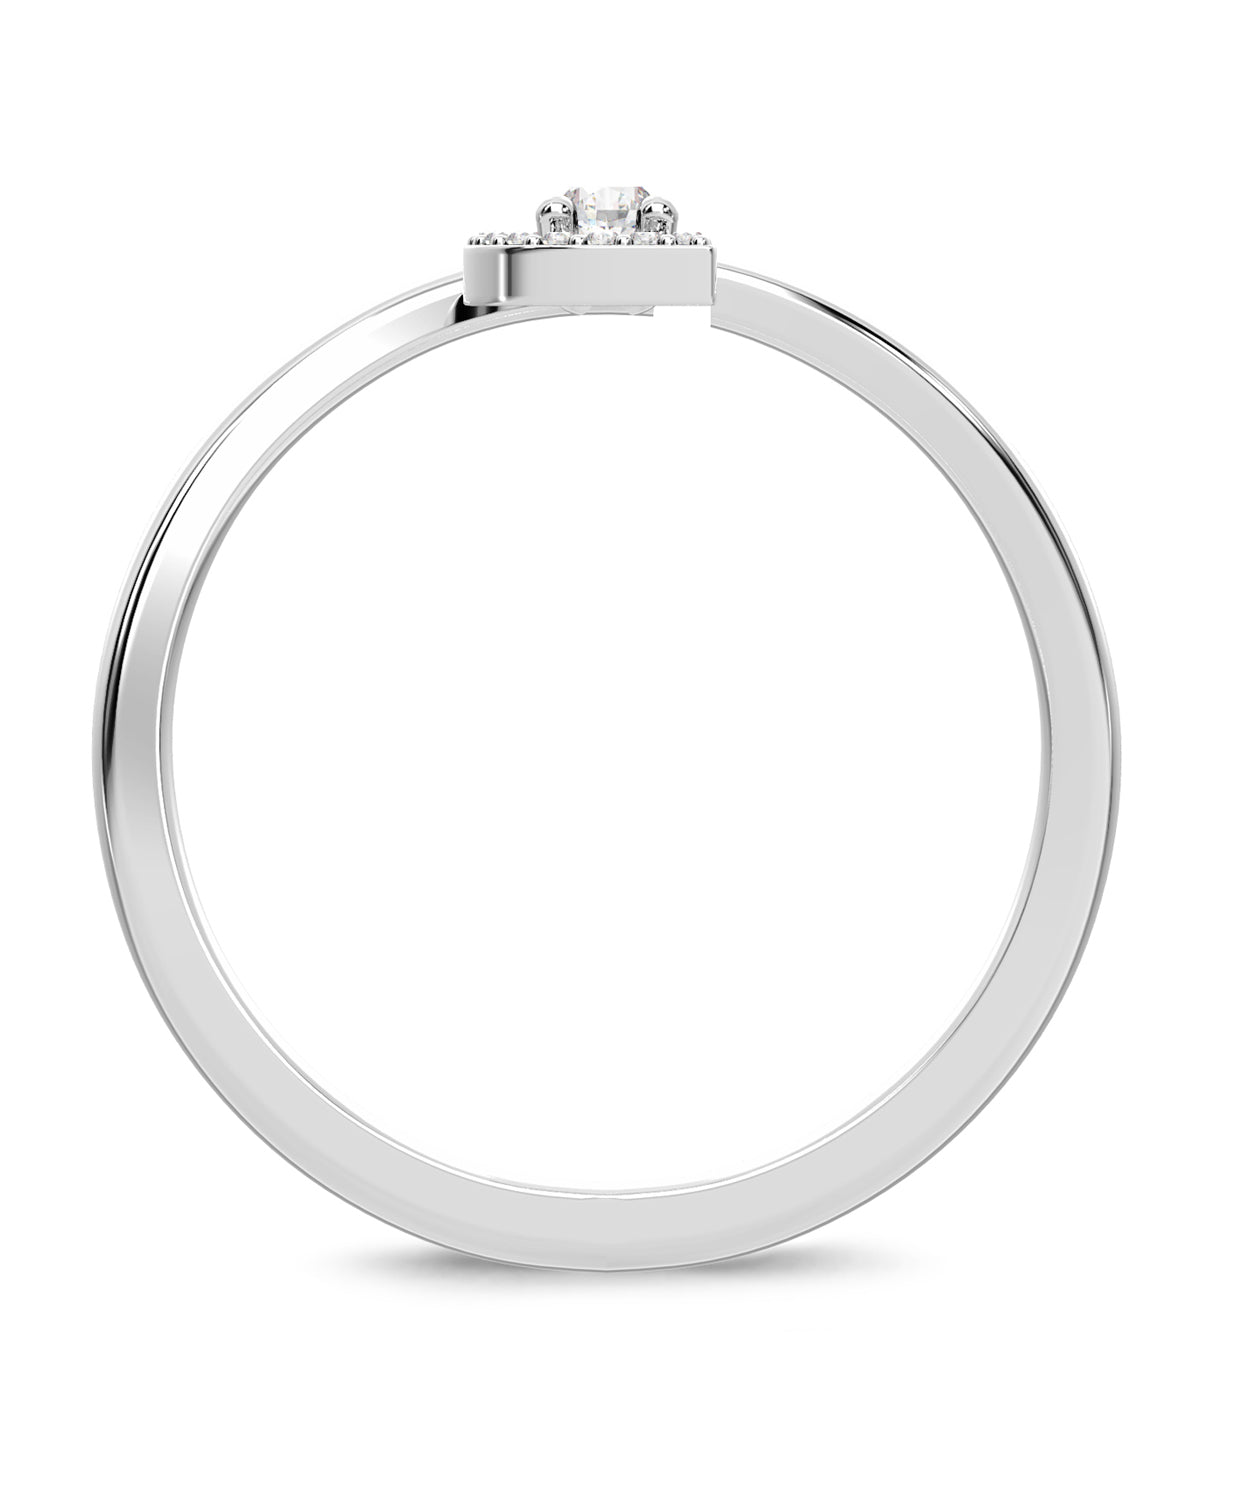 ESEMCO Diamond 18k White Gold Letter D Initial Open Ring View 2